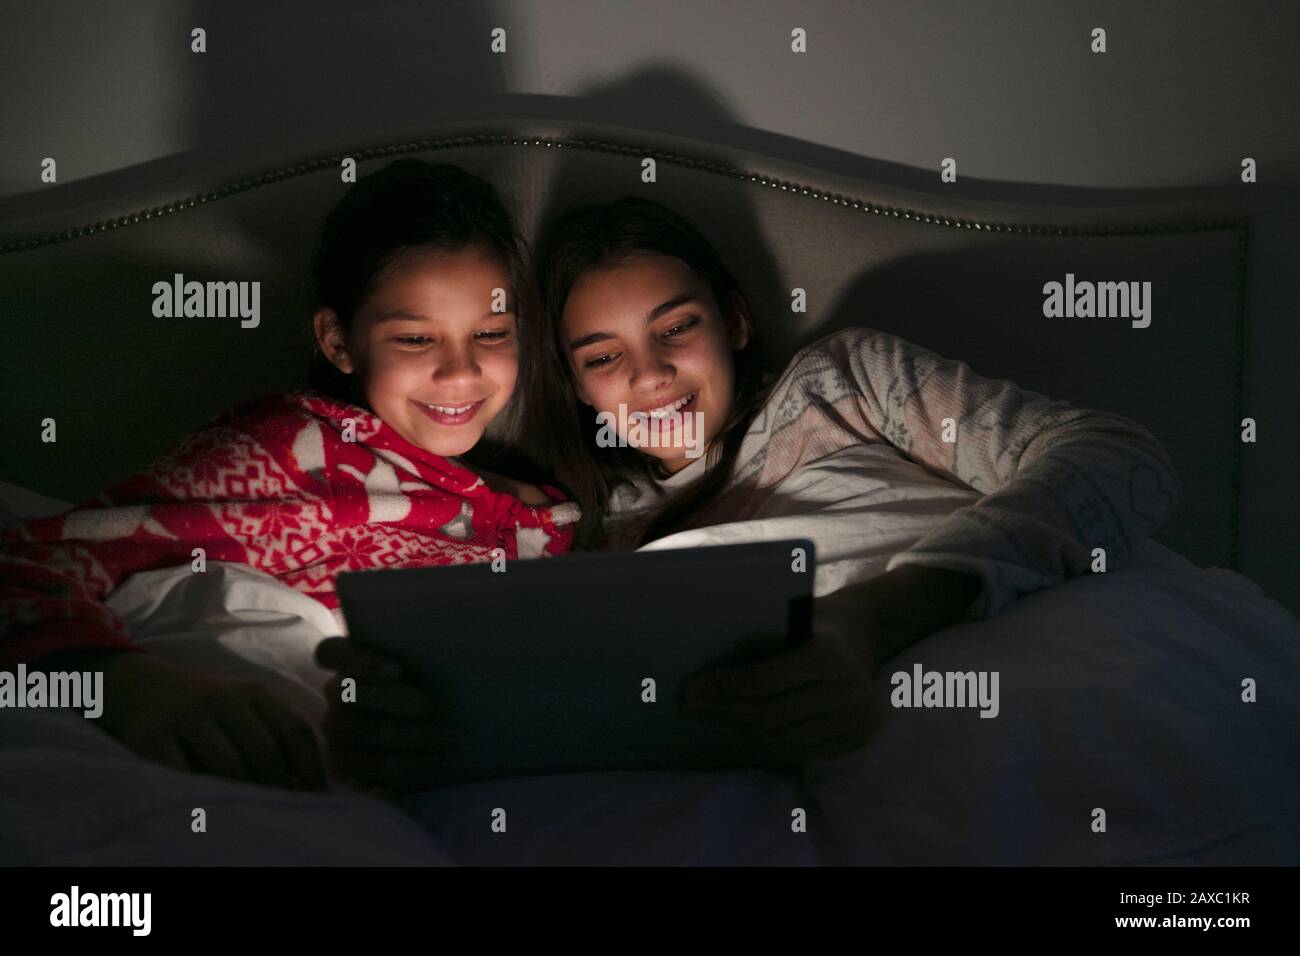 Les filles regardaient un film sur une tablette numérique dans une chambre sombre Banque D'Images